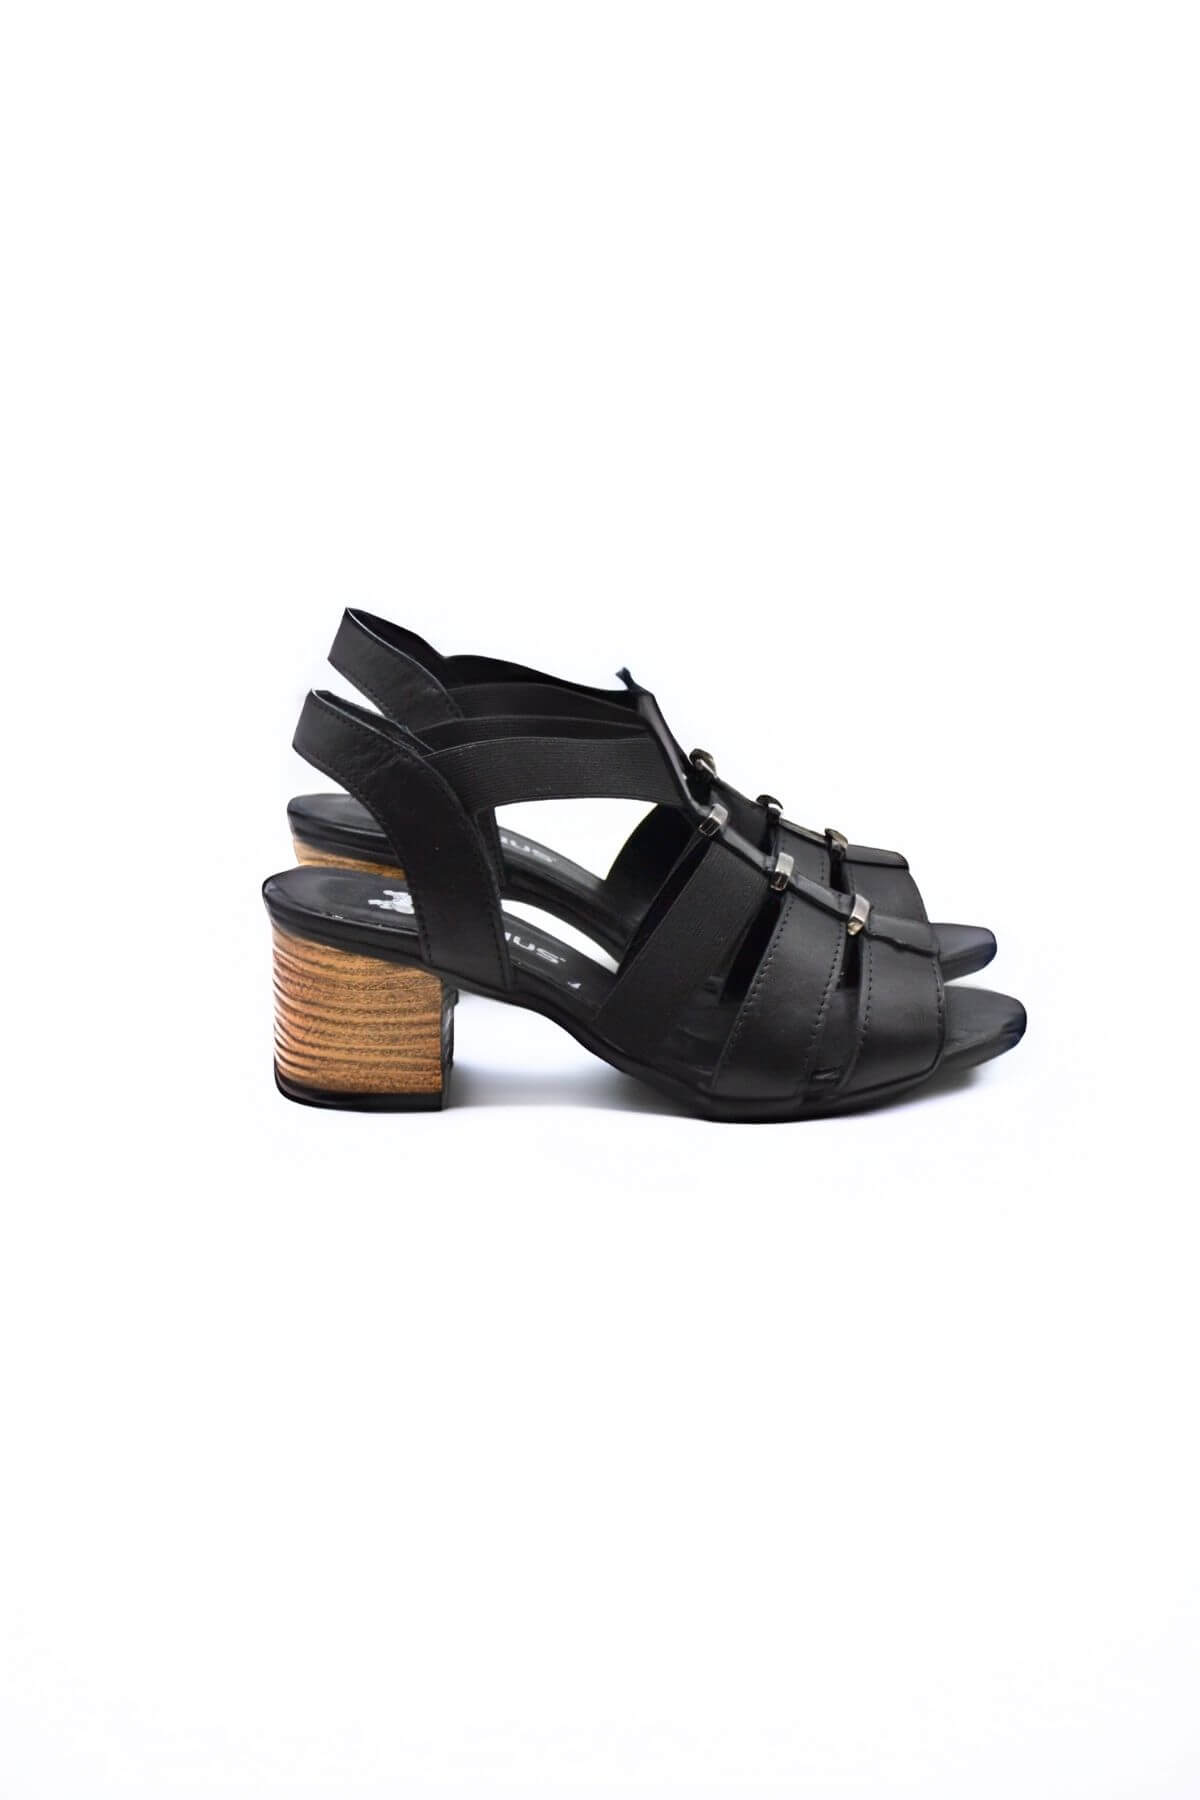 Kadın Yazlık Topuklu Deri Sandalet Siyah 1857227Y - Thumbnail